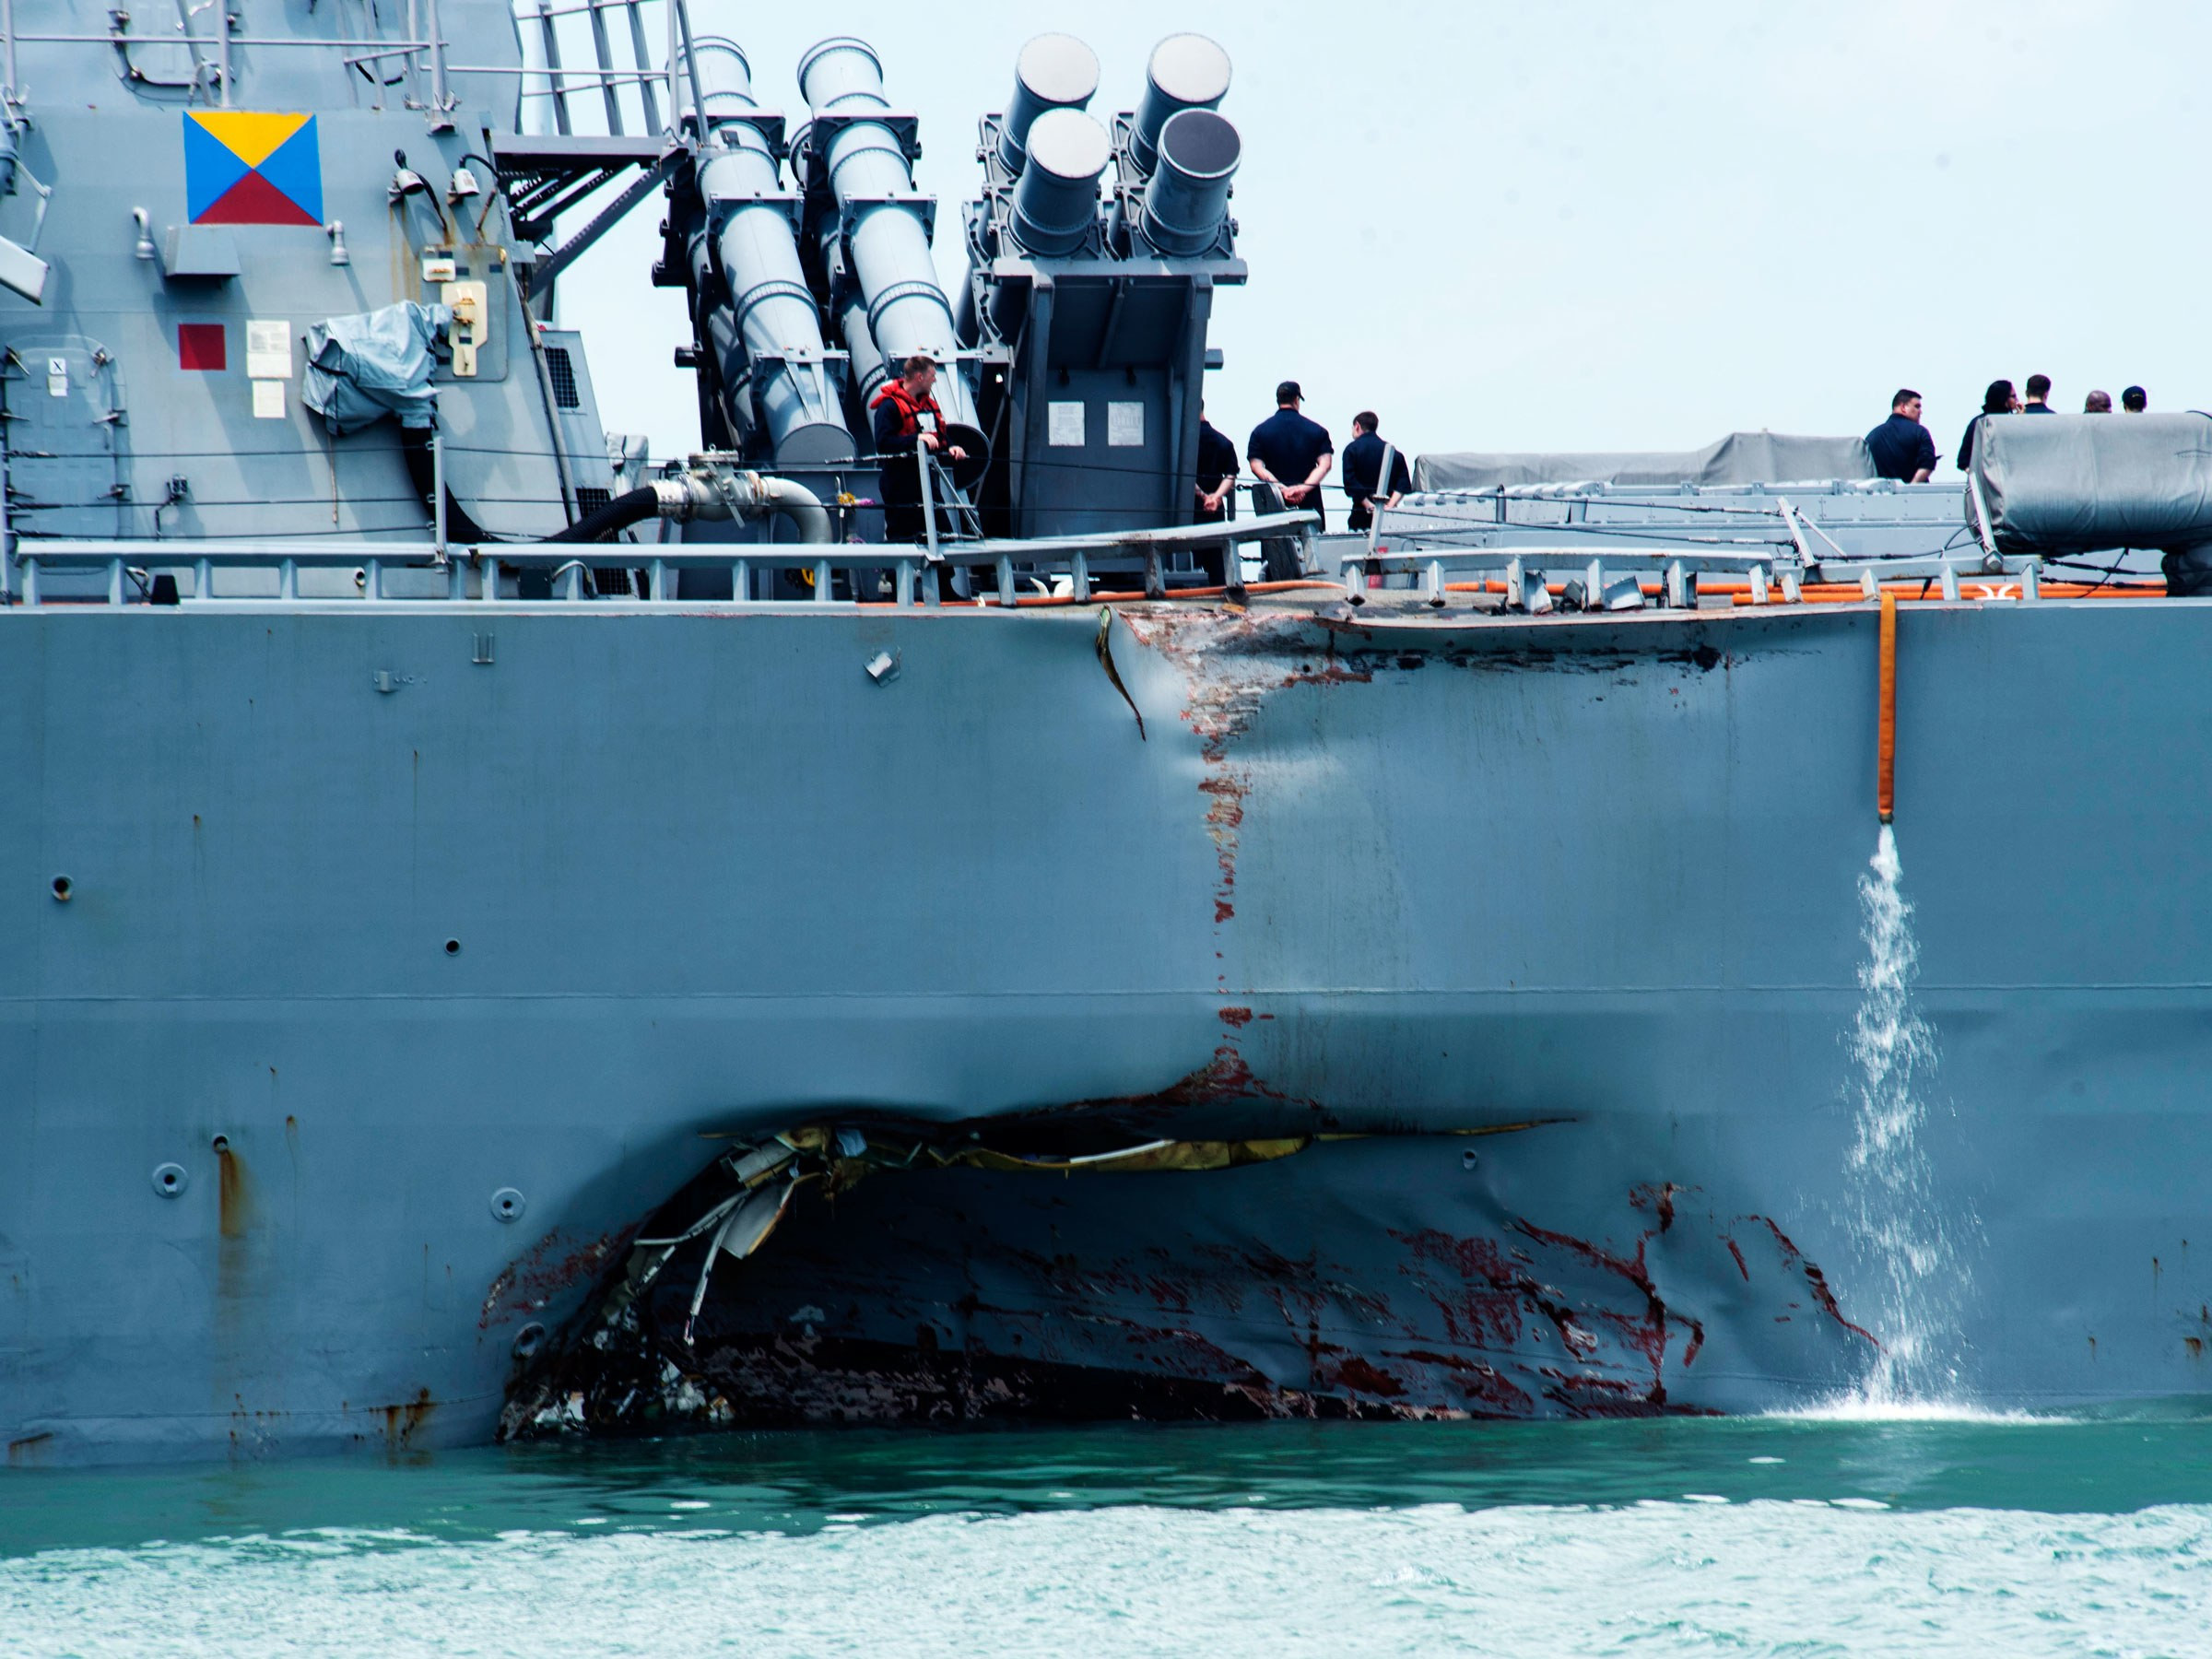 Βρέθηκαν σοροί στο αντιτορπιλικό των ΗΠΑ που συγκρούστηκε με δεξαμενόπλοιο